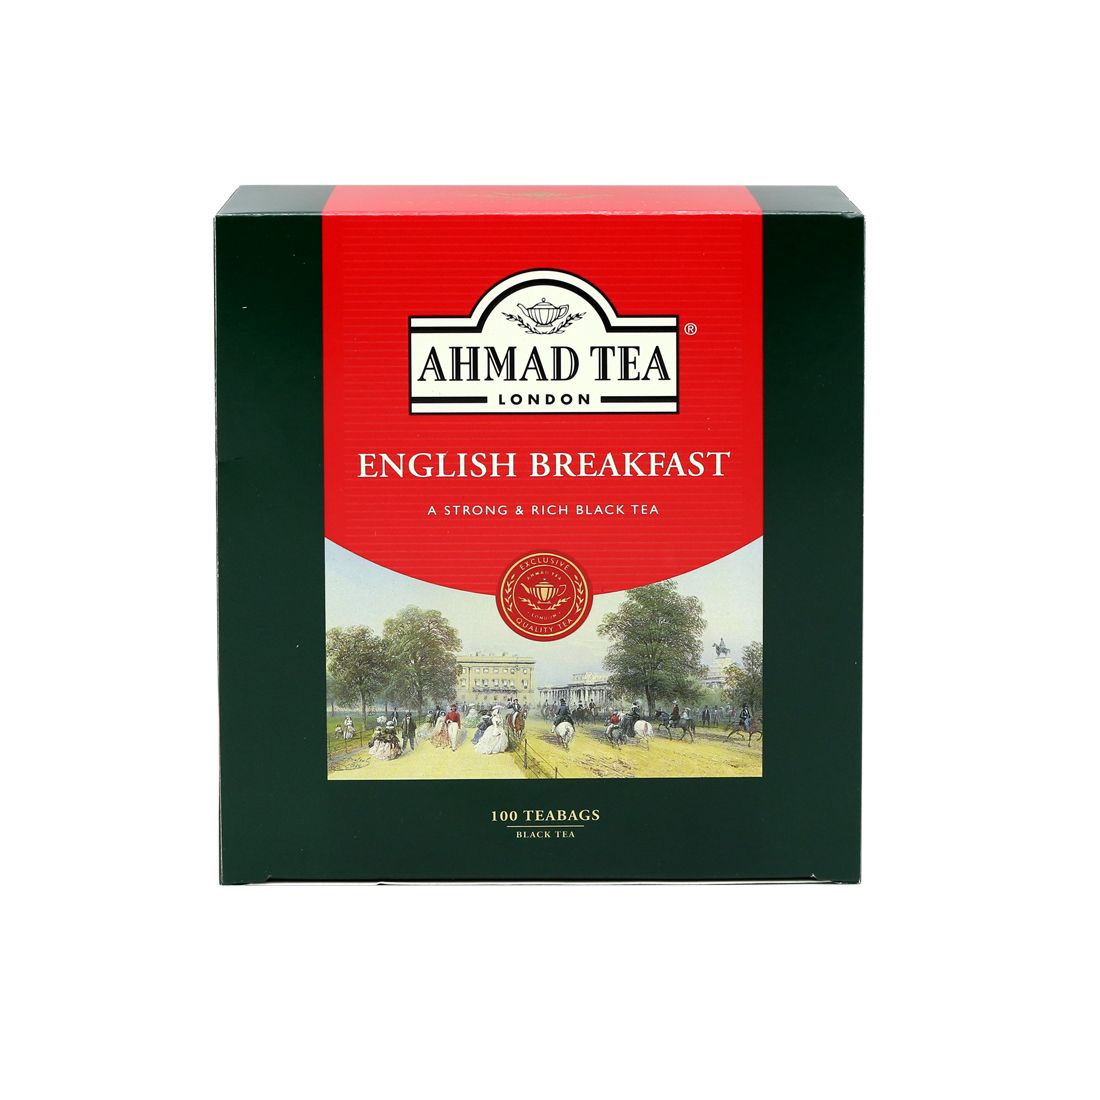 AHMAD TEA PREMIUM SRI TB ENGLISH TEA 2GM 100S